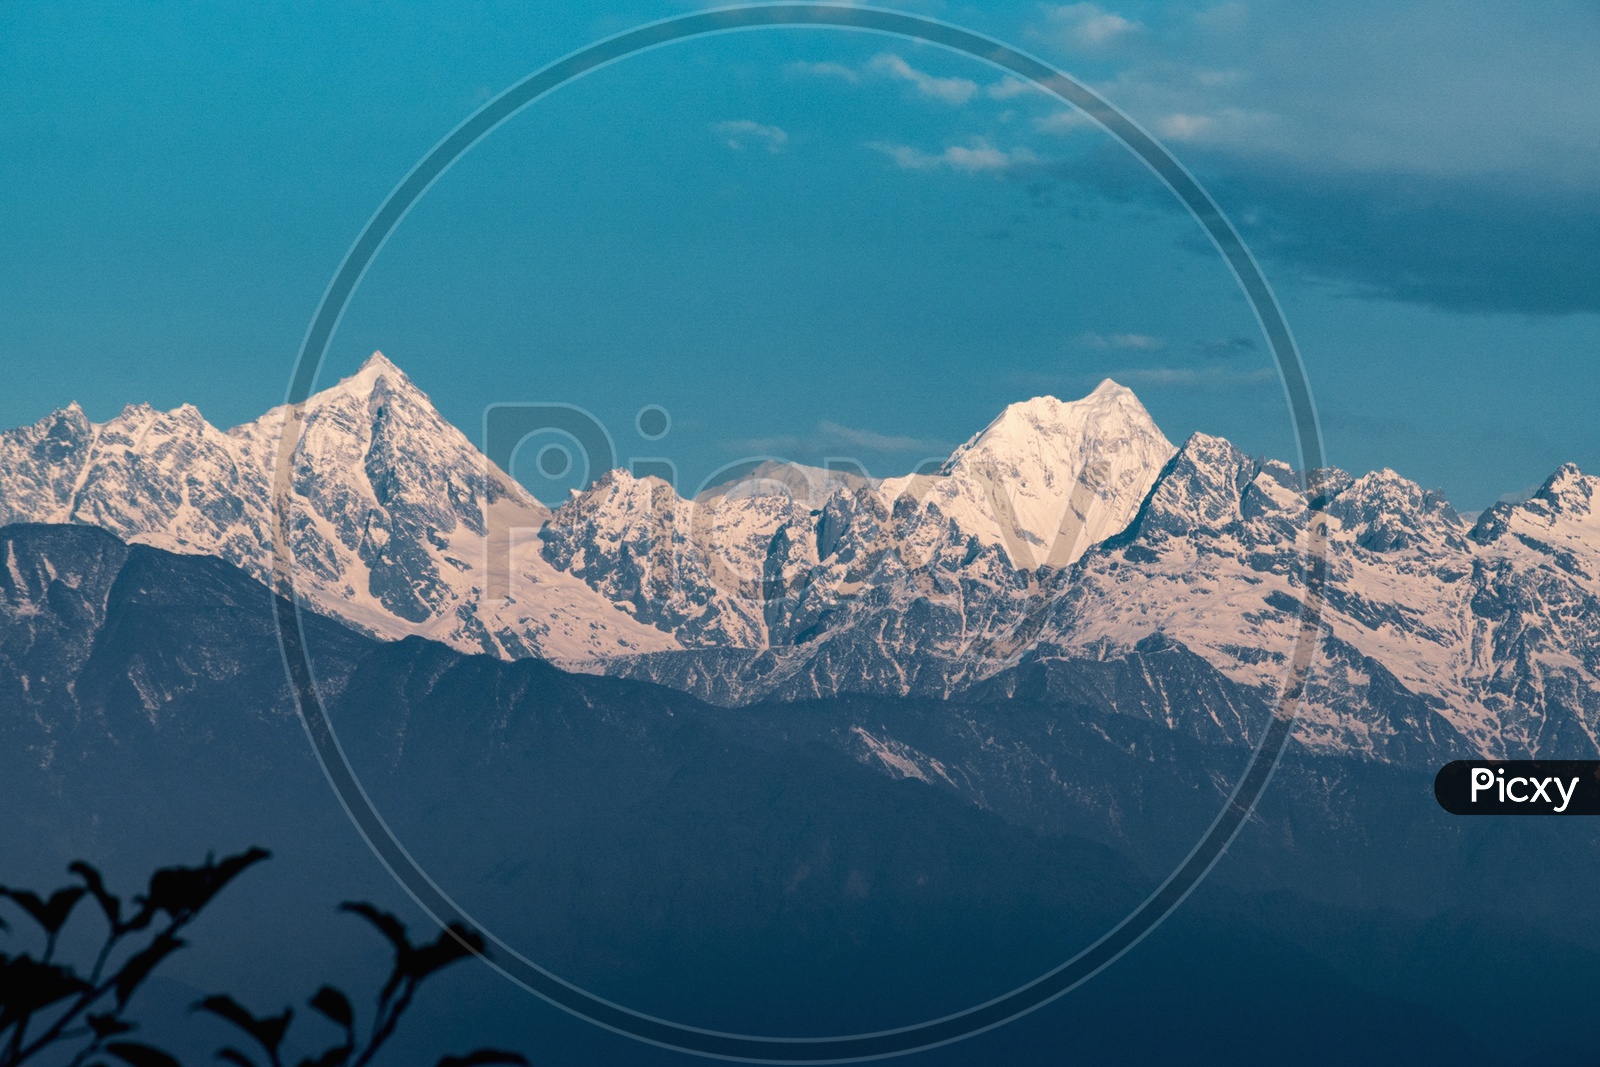 Kanchenjunga and Siniolchu Peaks